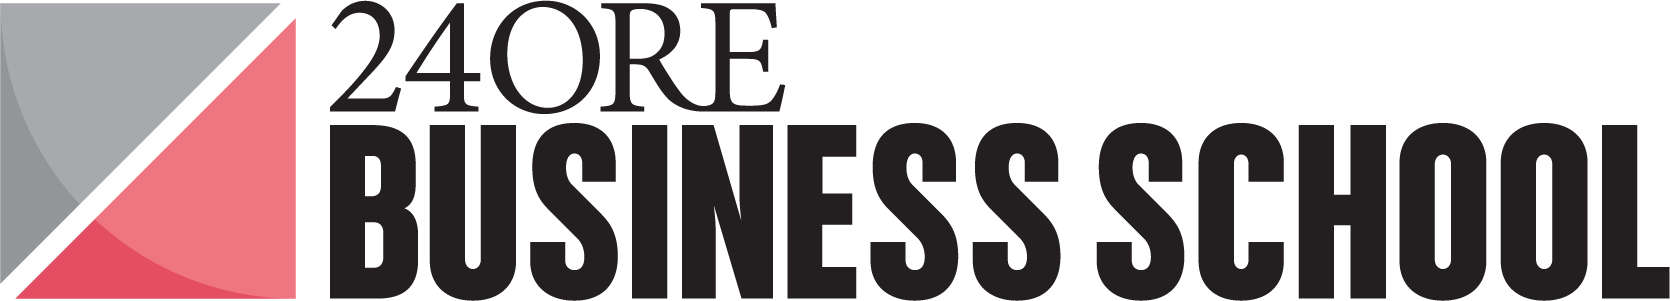 Logo IlSole24Ore Business School